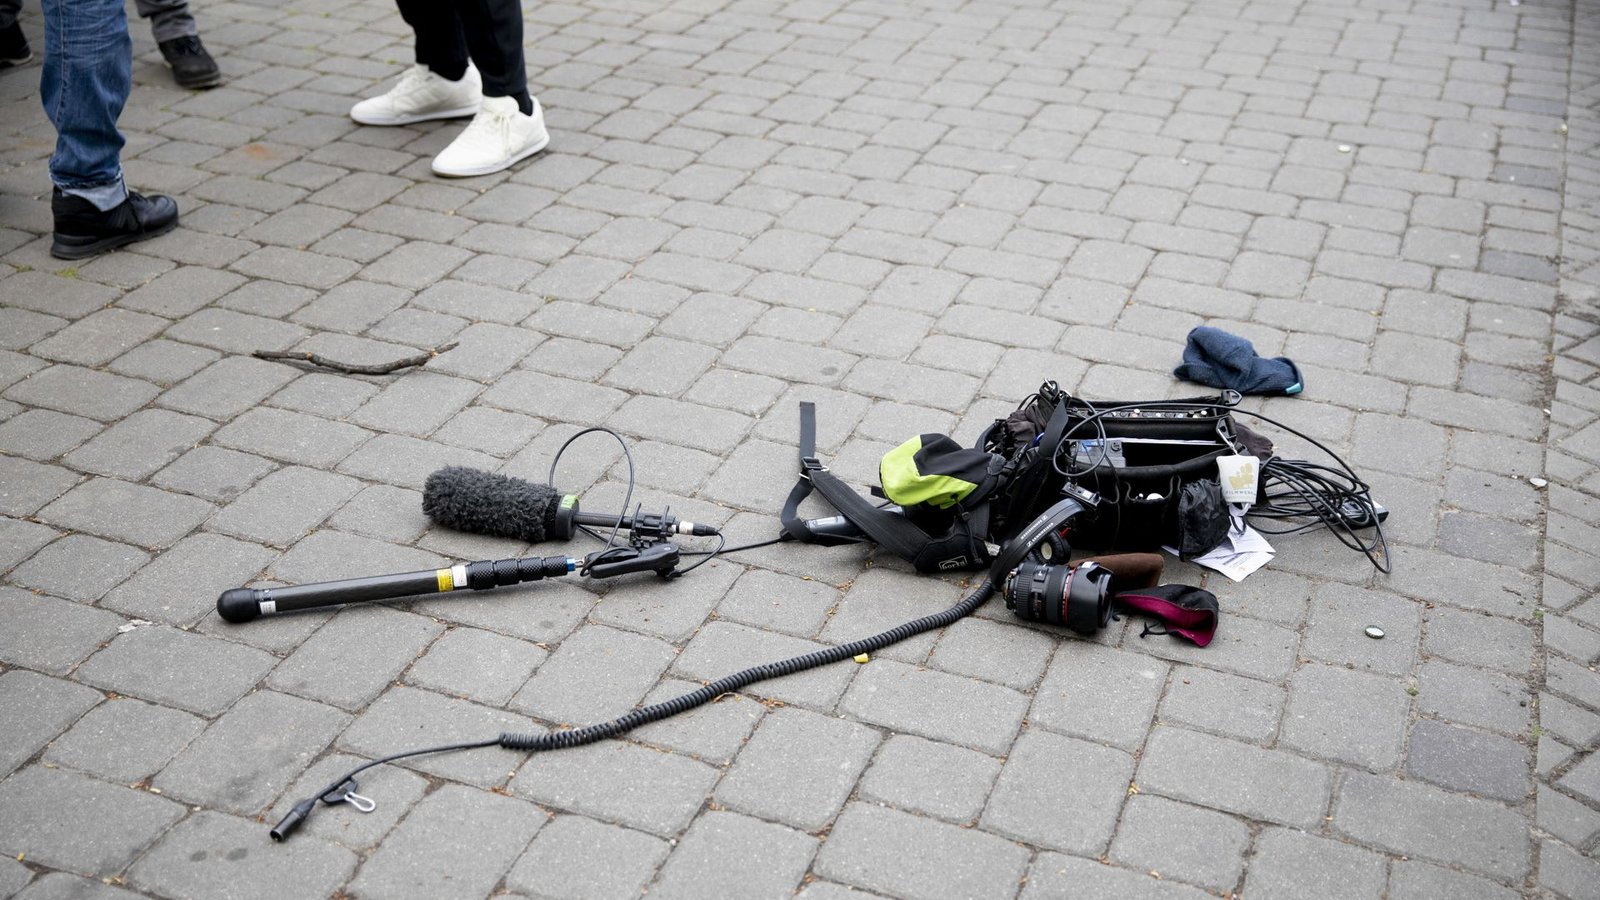 Im vergangenen Jahr wurde ein deutlicher Anstieg von Angriffen auf Journalisten in Deutschland registriert. (Symbolbild)Foto: dpa/Christoph Soeder